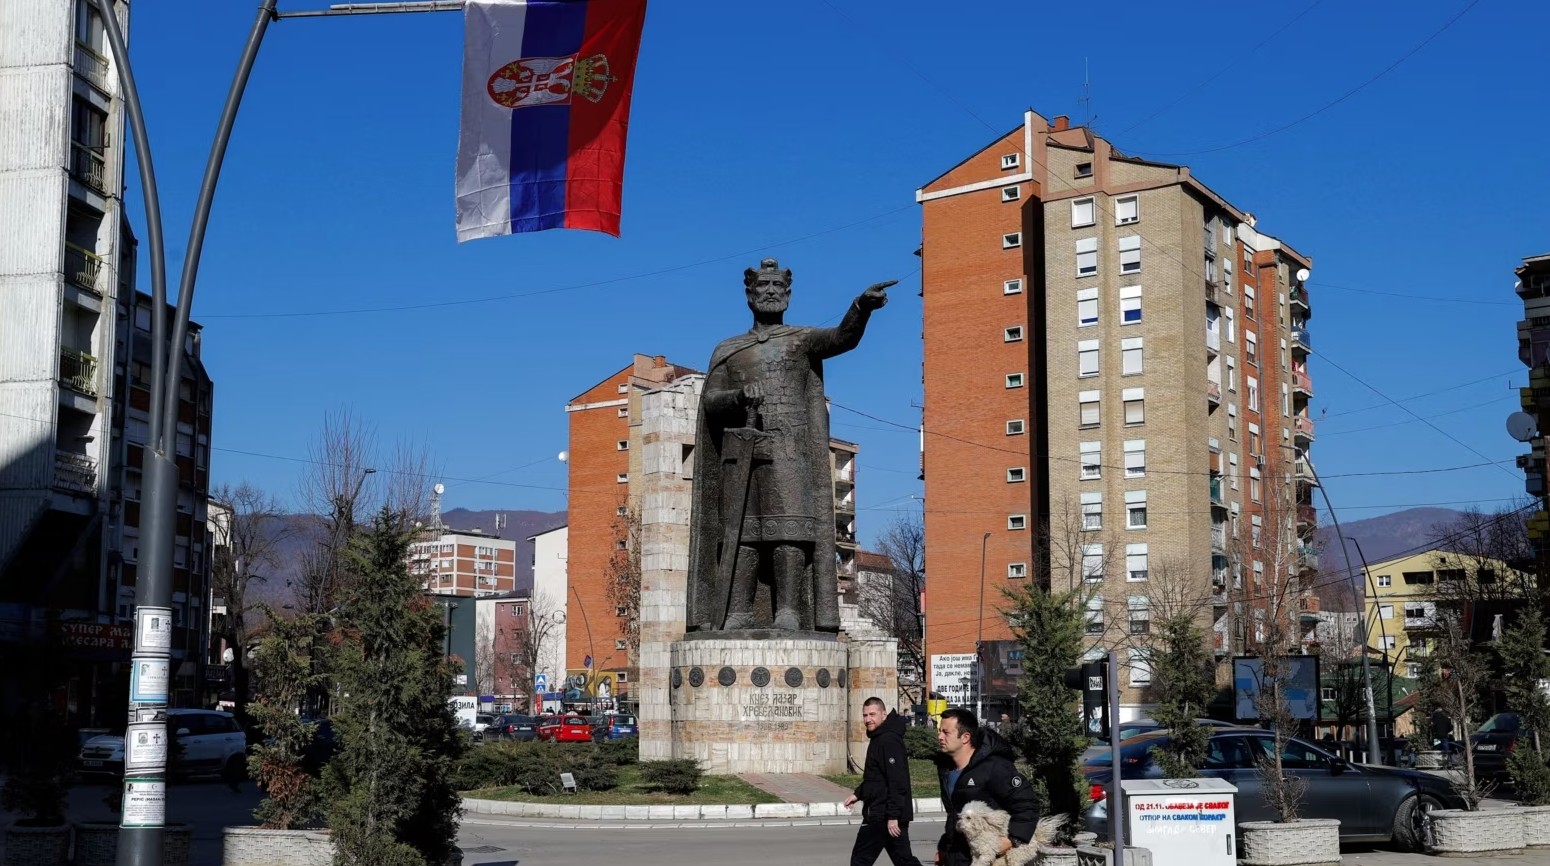 Paga të dyfishta e kontrata fiktive: Ku shkoi buxheti i Kosovës për komunat serbe?